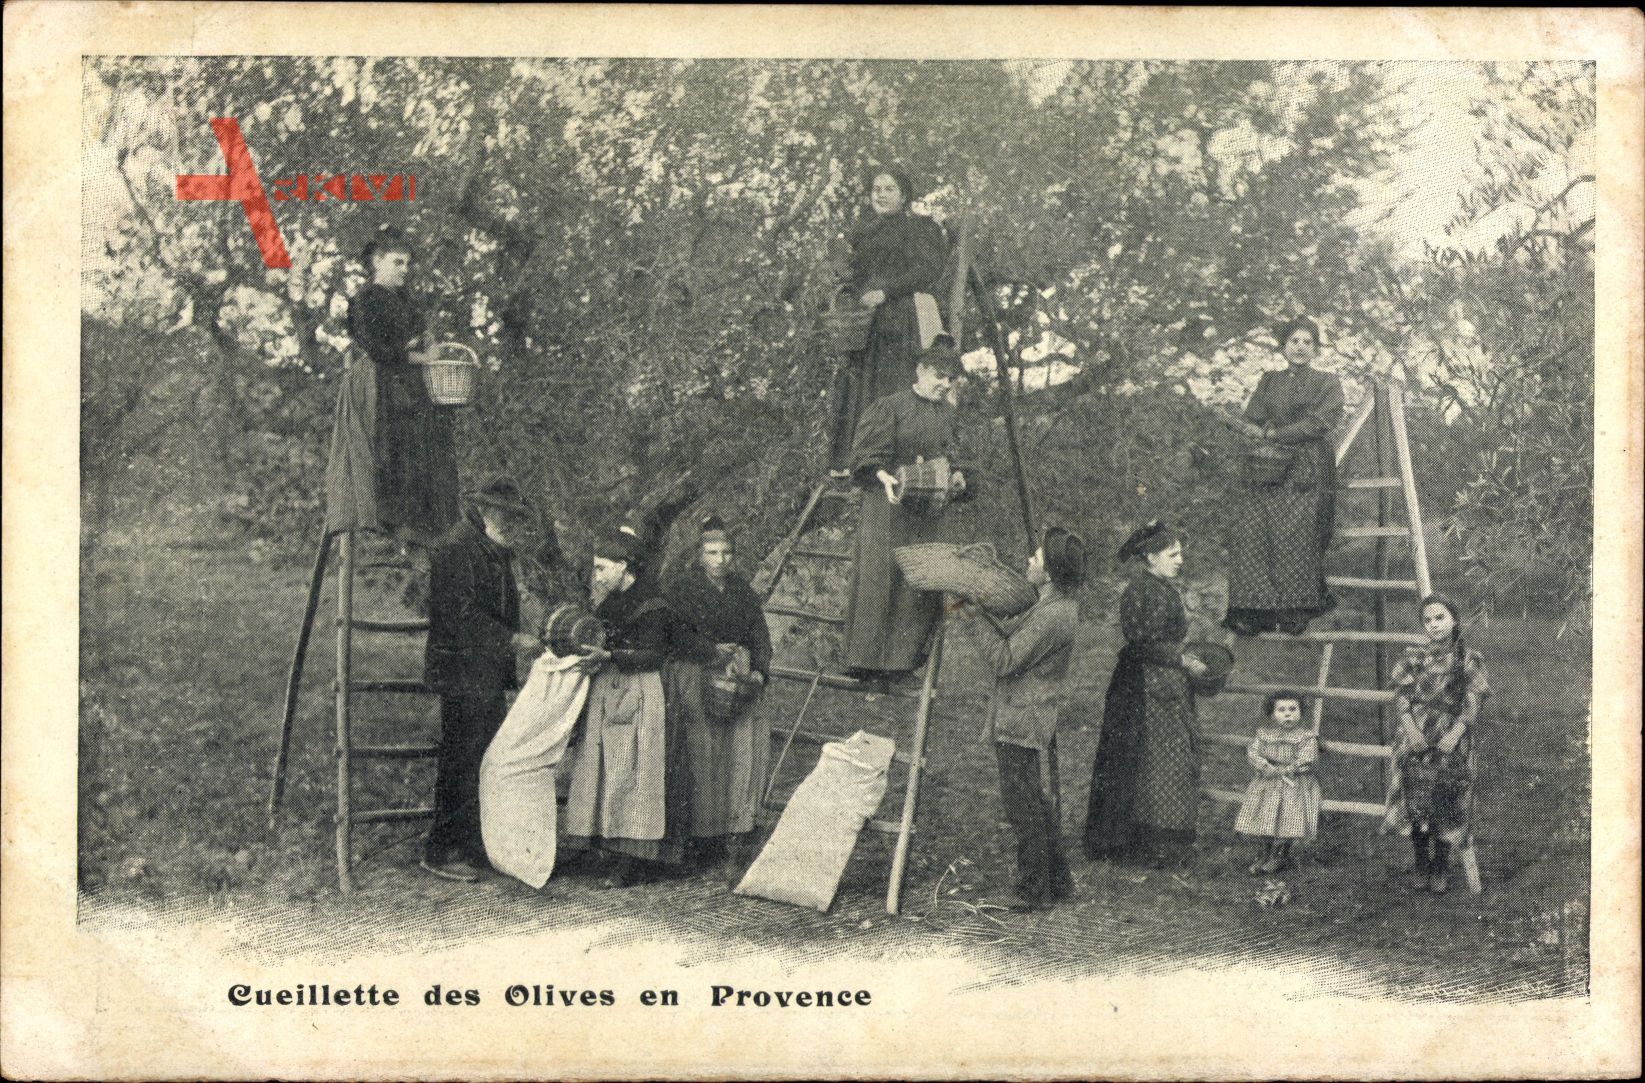 Cueillettes des olives en Provence, Bauern bei der Olivenernte, Leitern